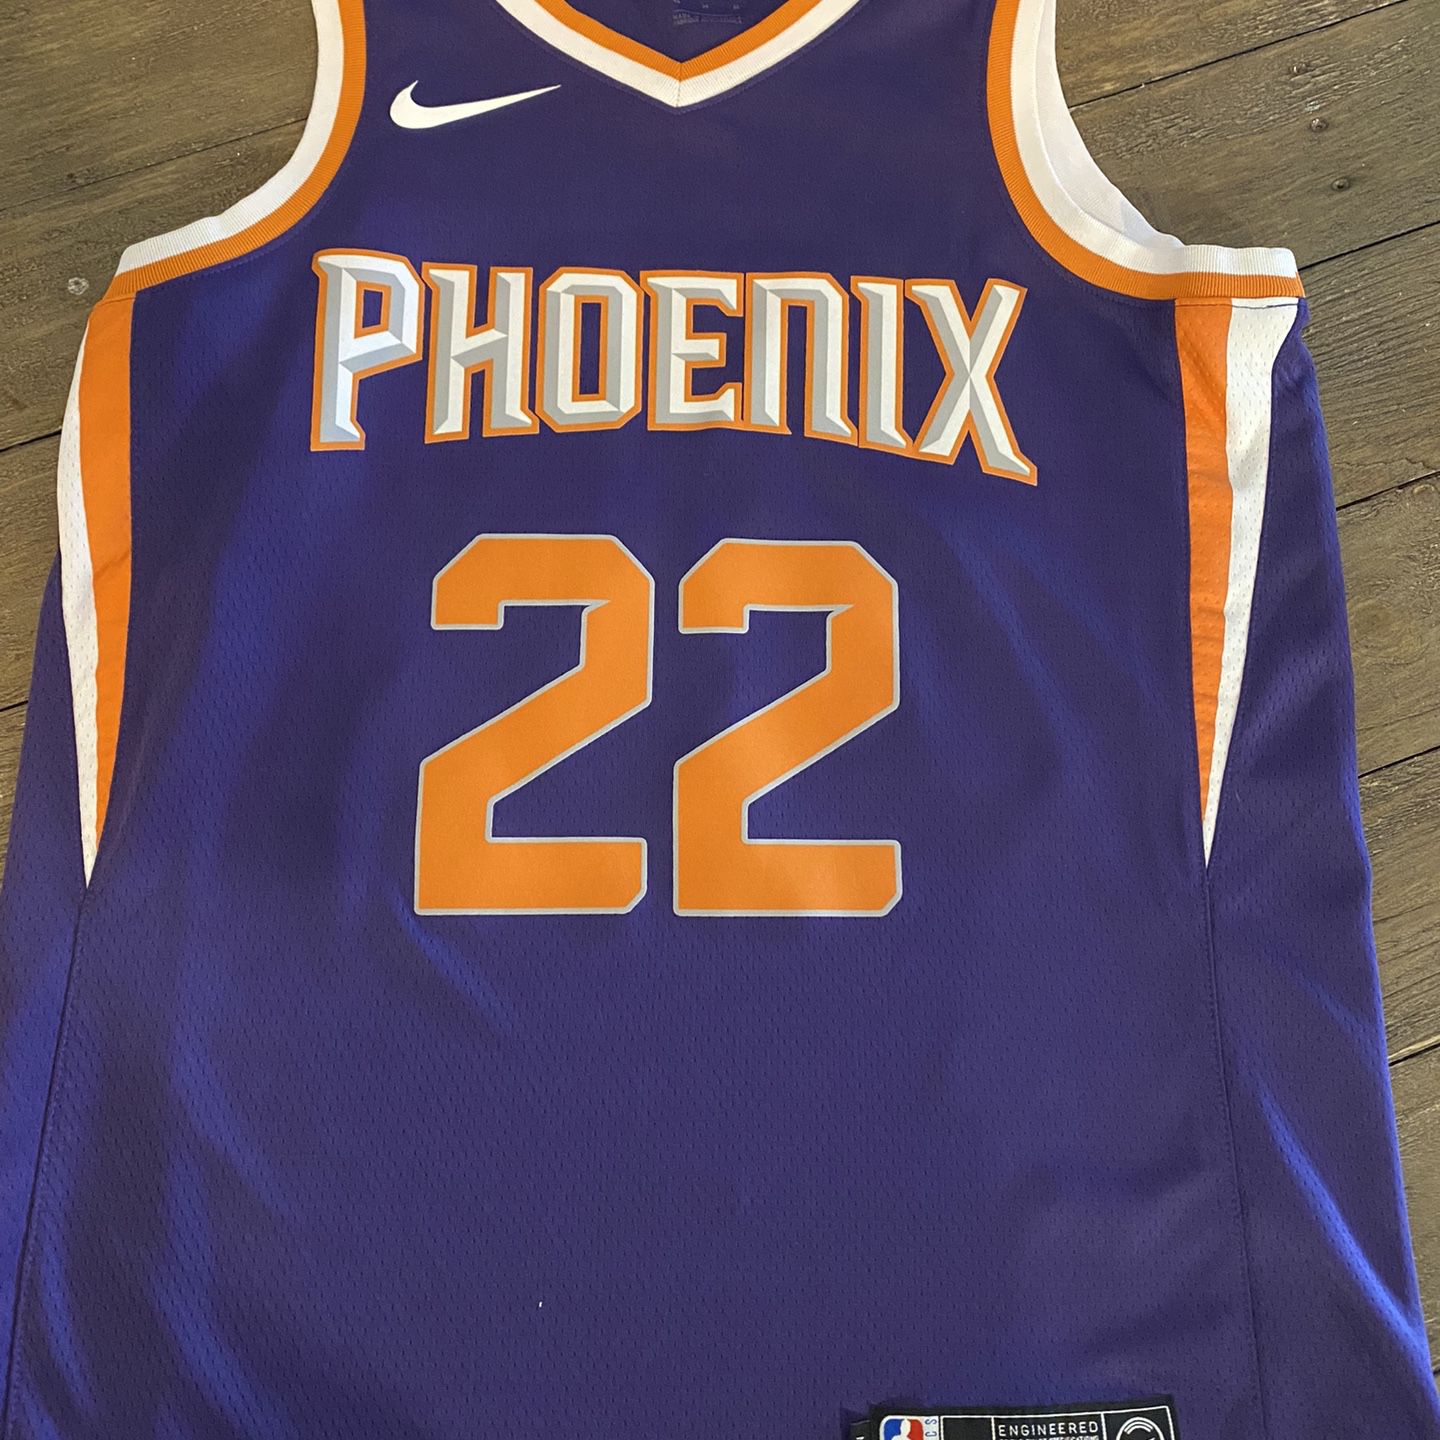 Phoenix Suns Deandre Ayton Jersey NBA #22 Black Orange PHX for Sale in  Bellevue, WA - OfferUp